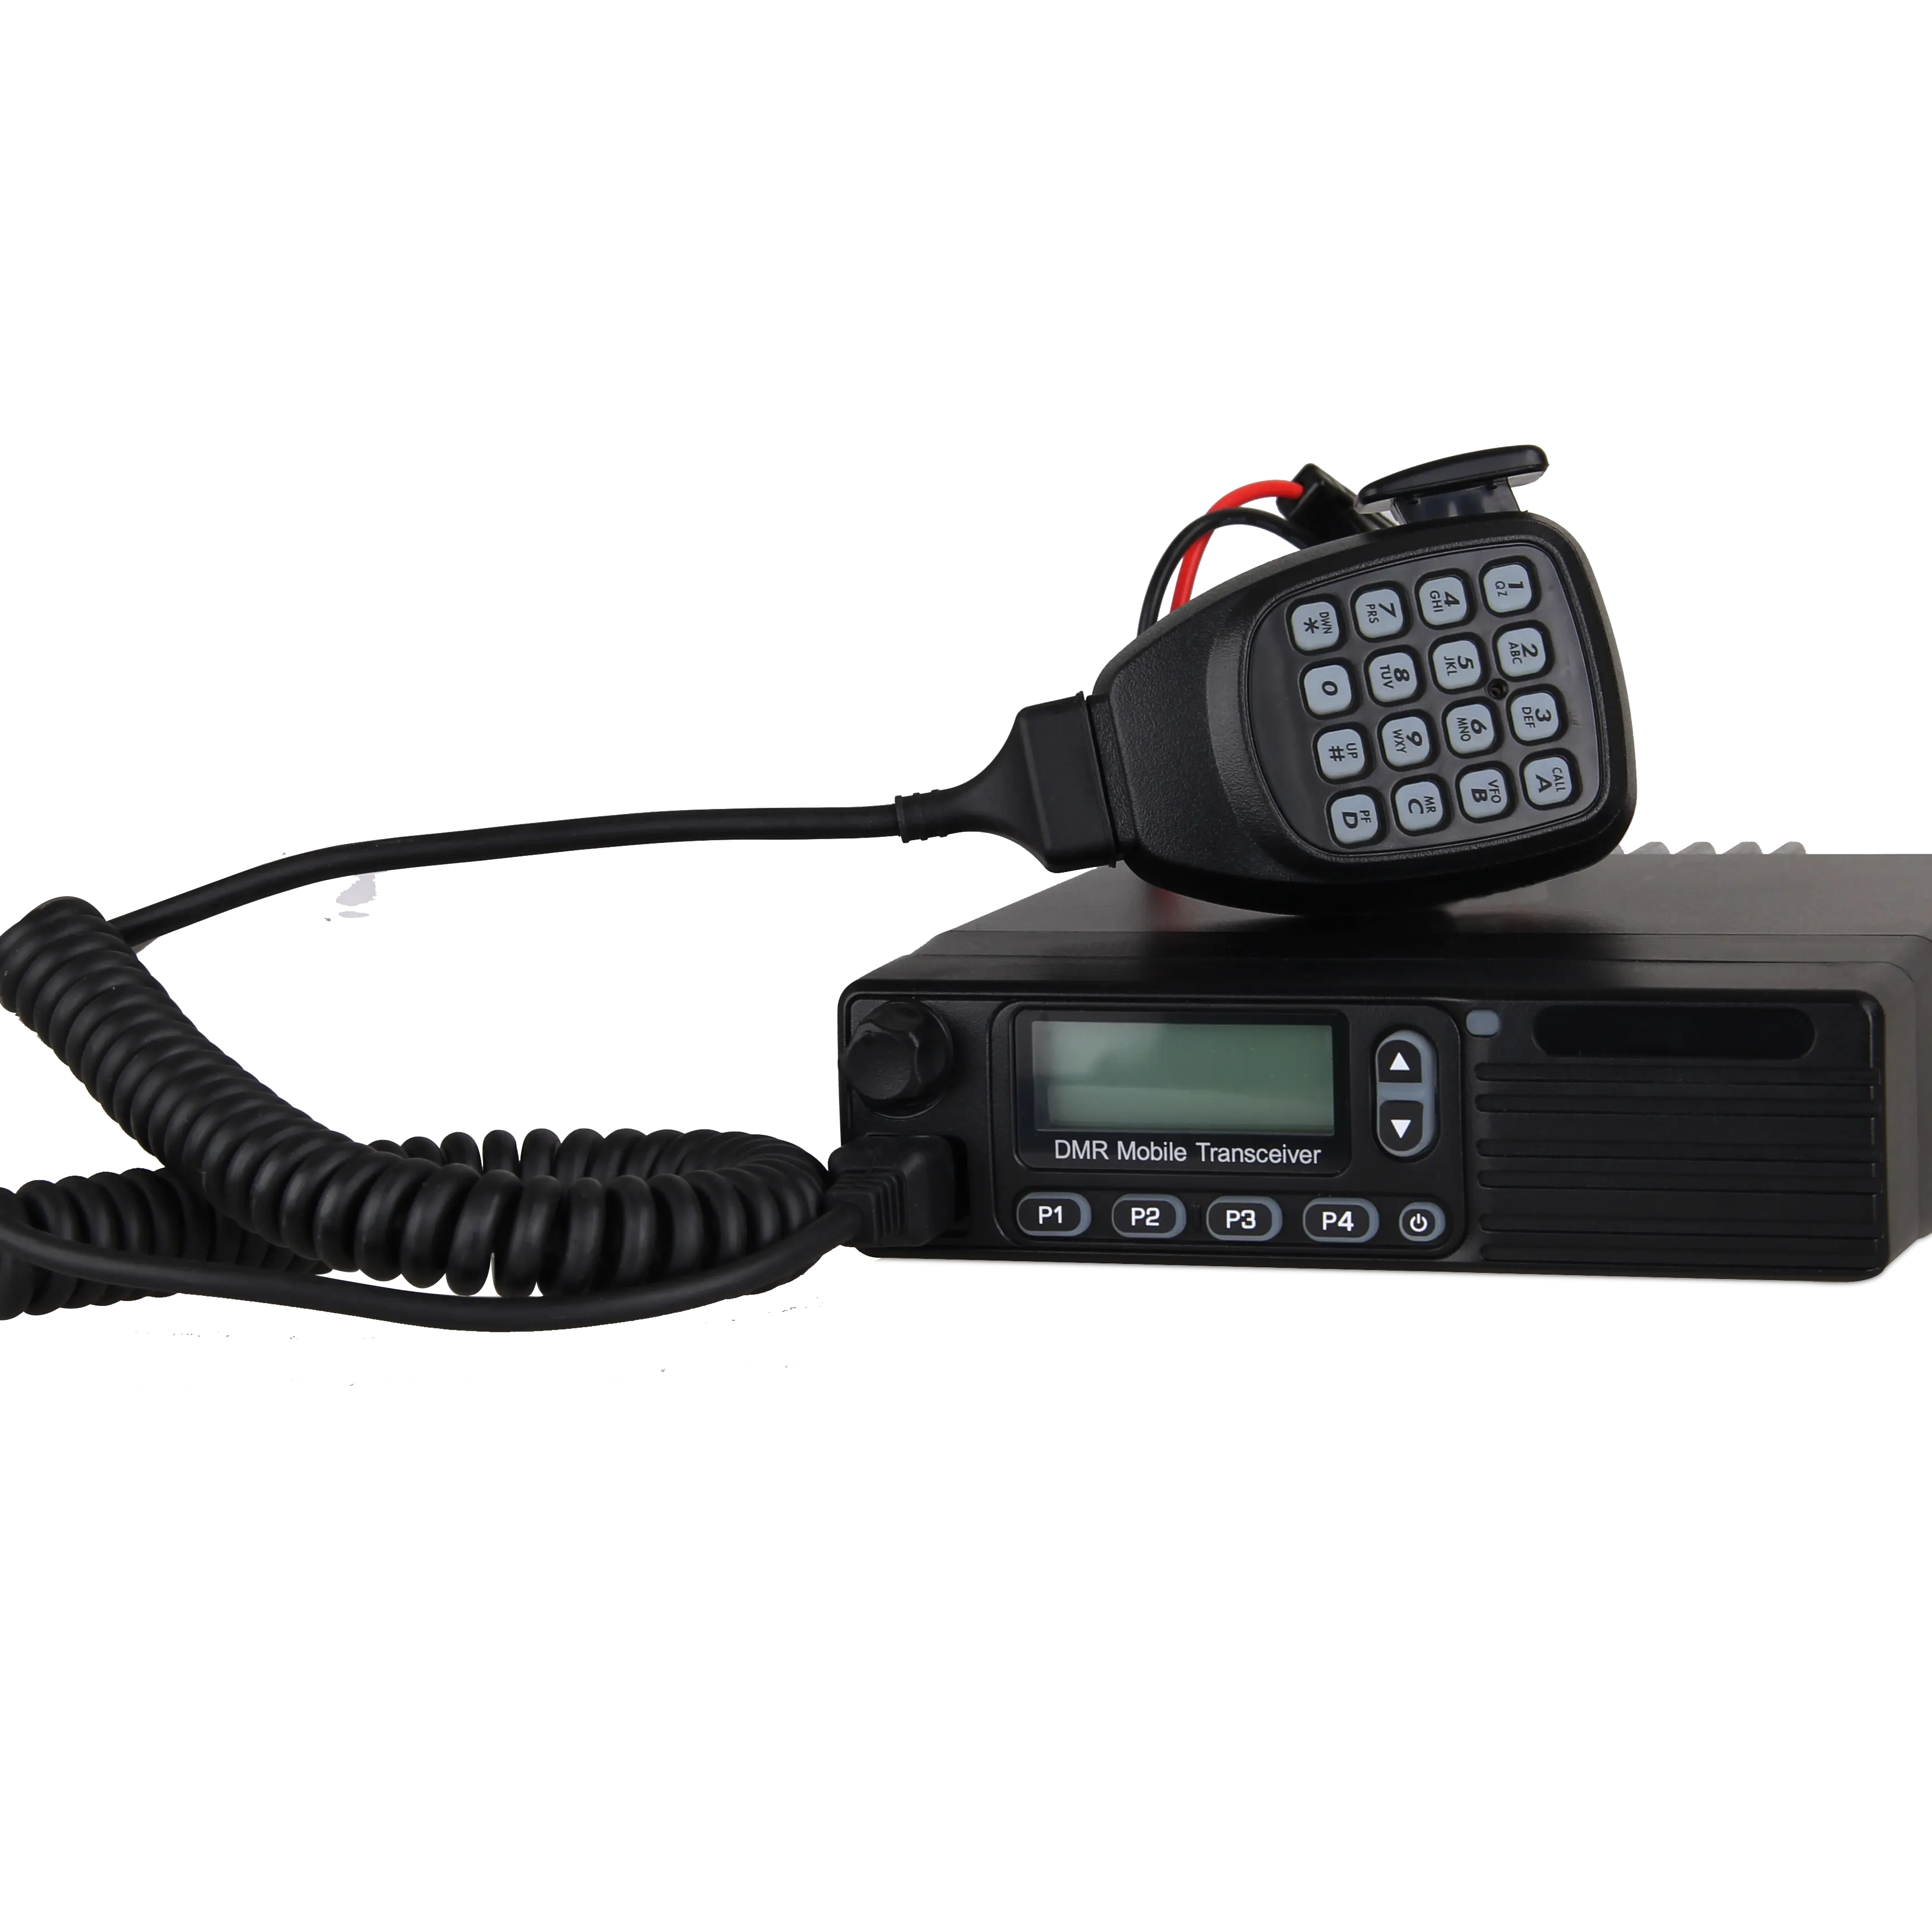 Junsun — Radio Mobile numérique DMR, VHF/UHF KST DM-M8000, radio amateur peut travailler avec répéteur